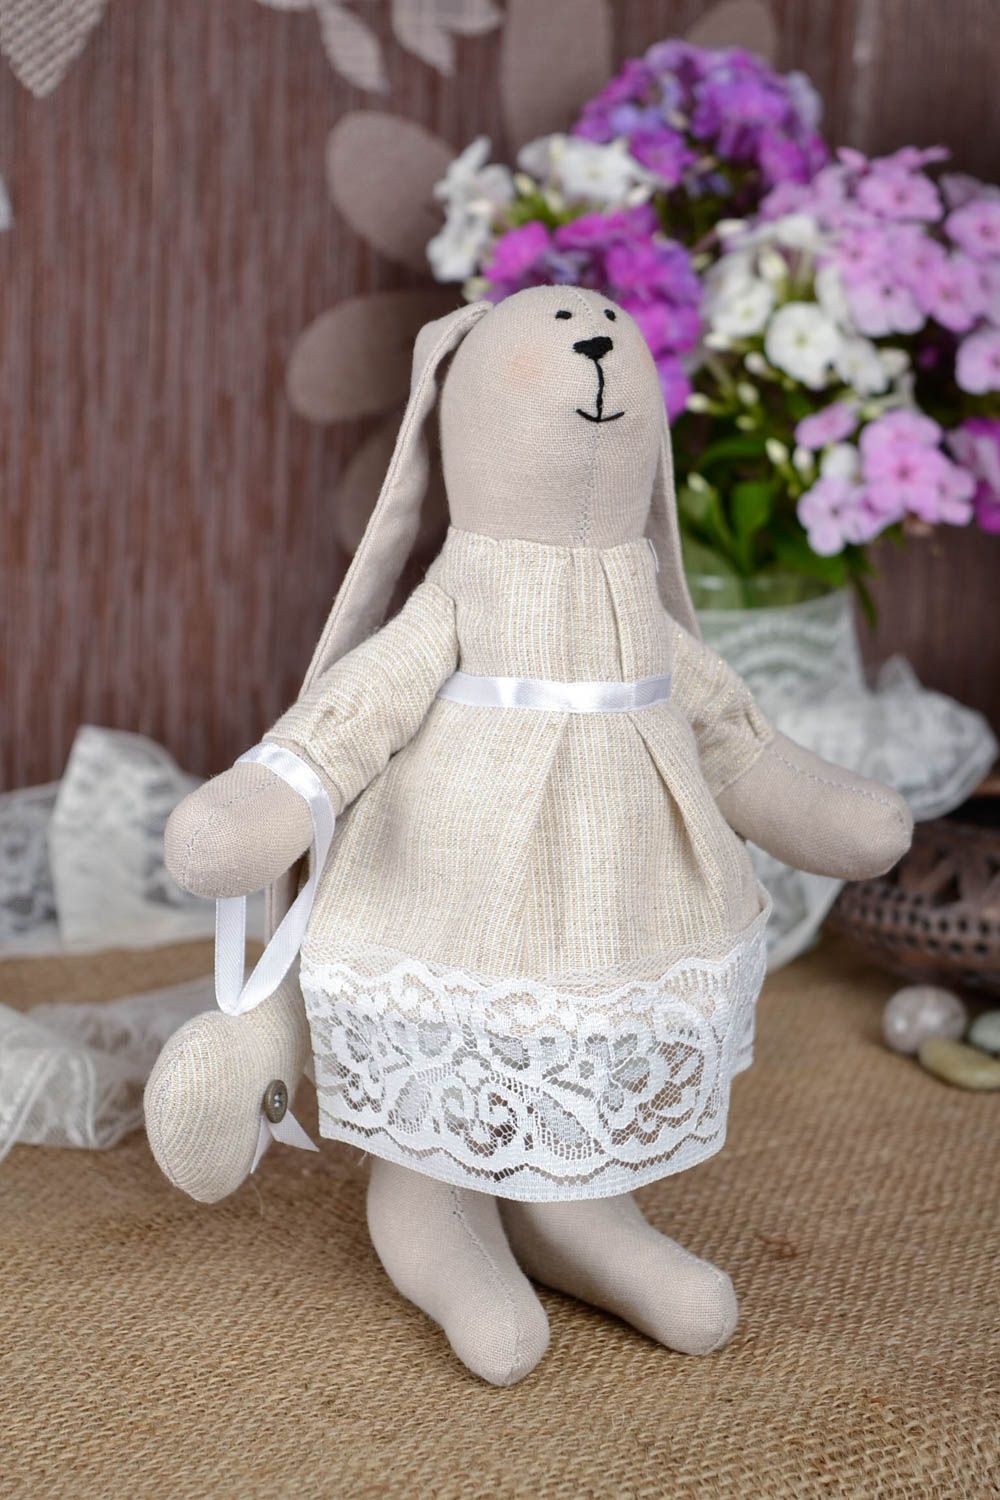 Игрушка заяц ручной работы авторская игрушка в кружевном платье стильный подарок фото 1